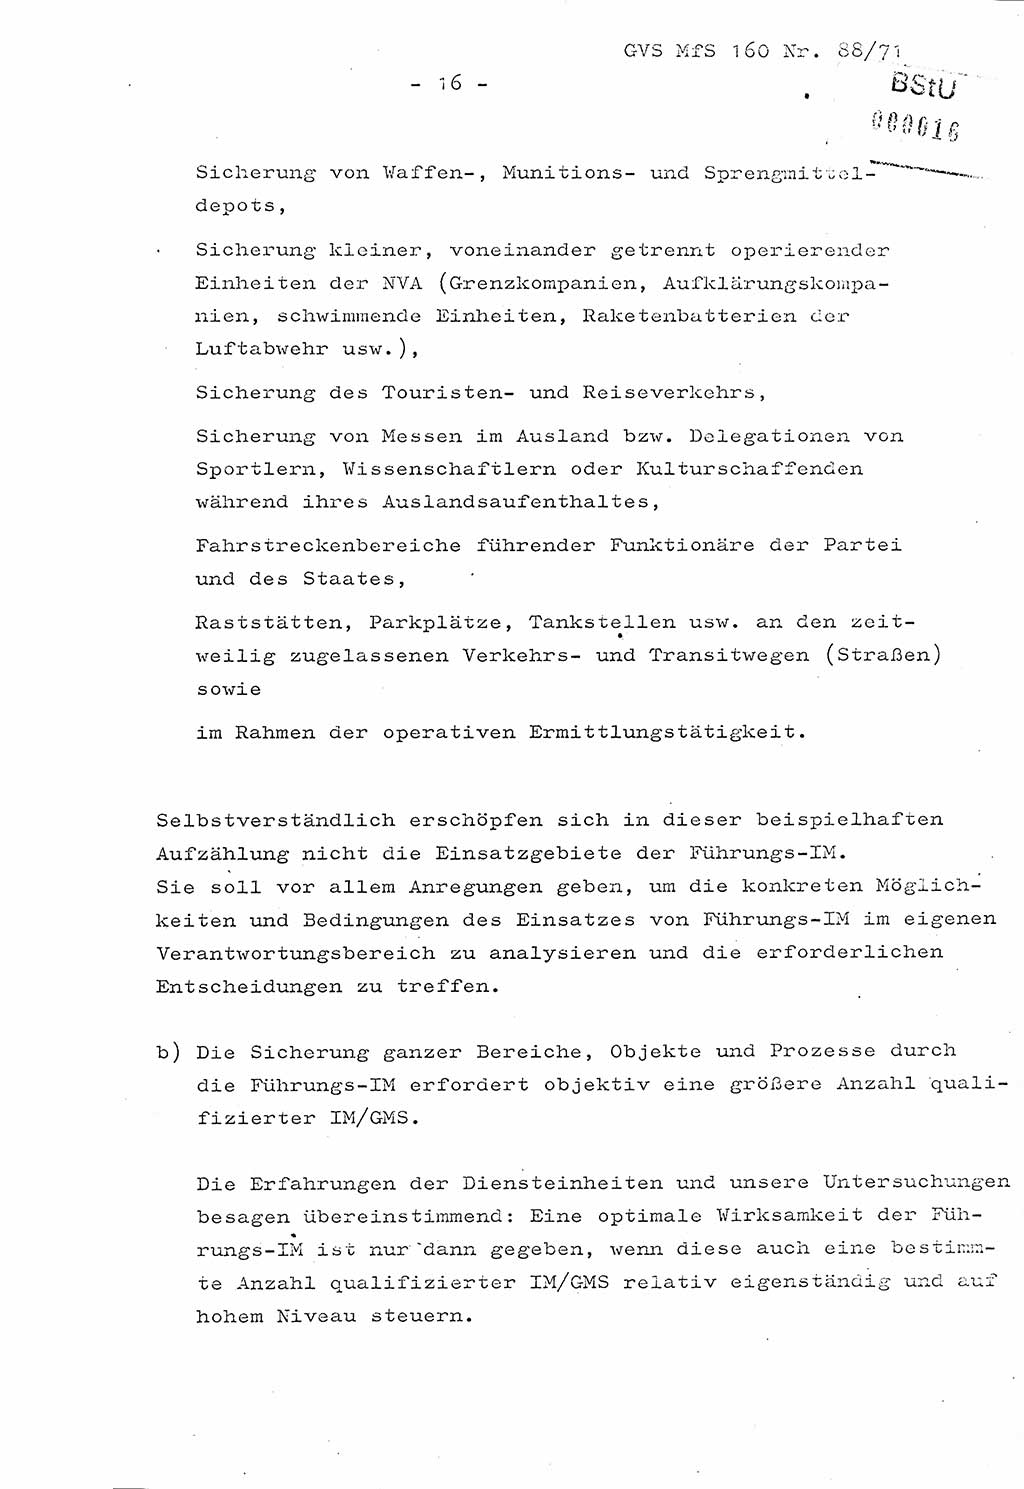 Dissertation Oberstleutnant Josef Schwarz (BV Schwerin), Major Fritz Amm (JHS), Hauptmann Peter Gräßler (JHS), Ministerium für Staatssicherheit (MfS) [Deutsche Demokratische Republik (DDR)], Juristische Hochschule (JHS), Geheime Verschlußsache (GVS) 160-88/71, Potsdam 1972, Seite 16 (Diss. MfS DDR JHS GVS 160-88/71 1972, S. 16)